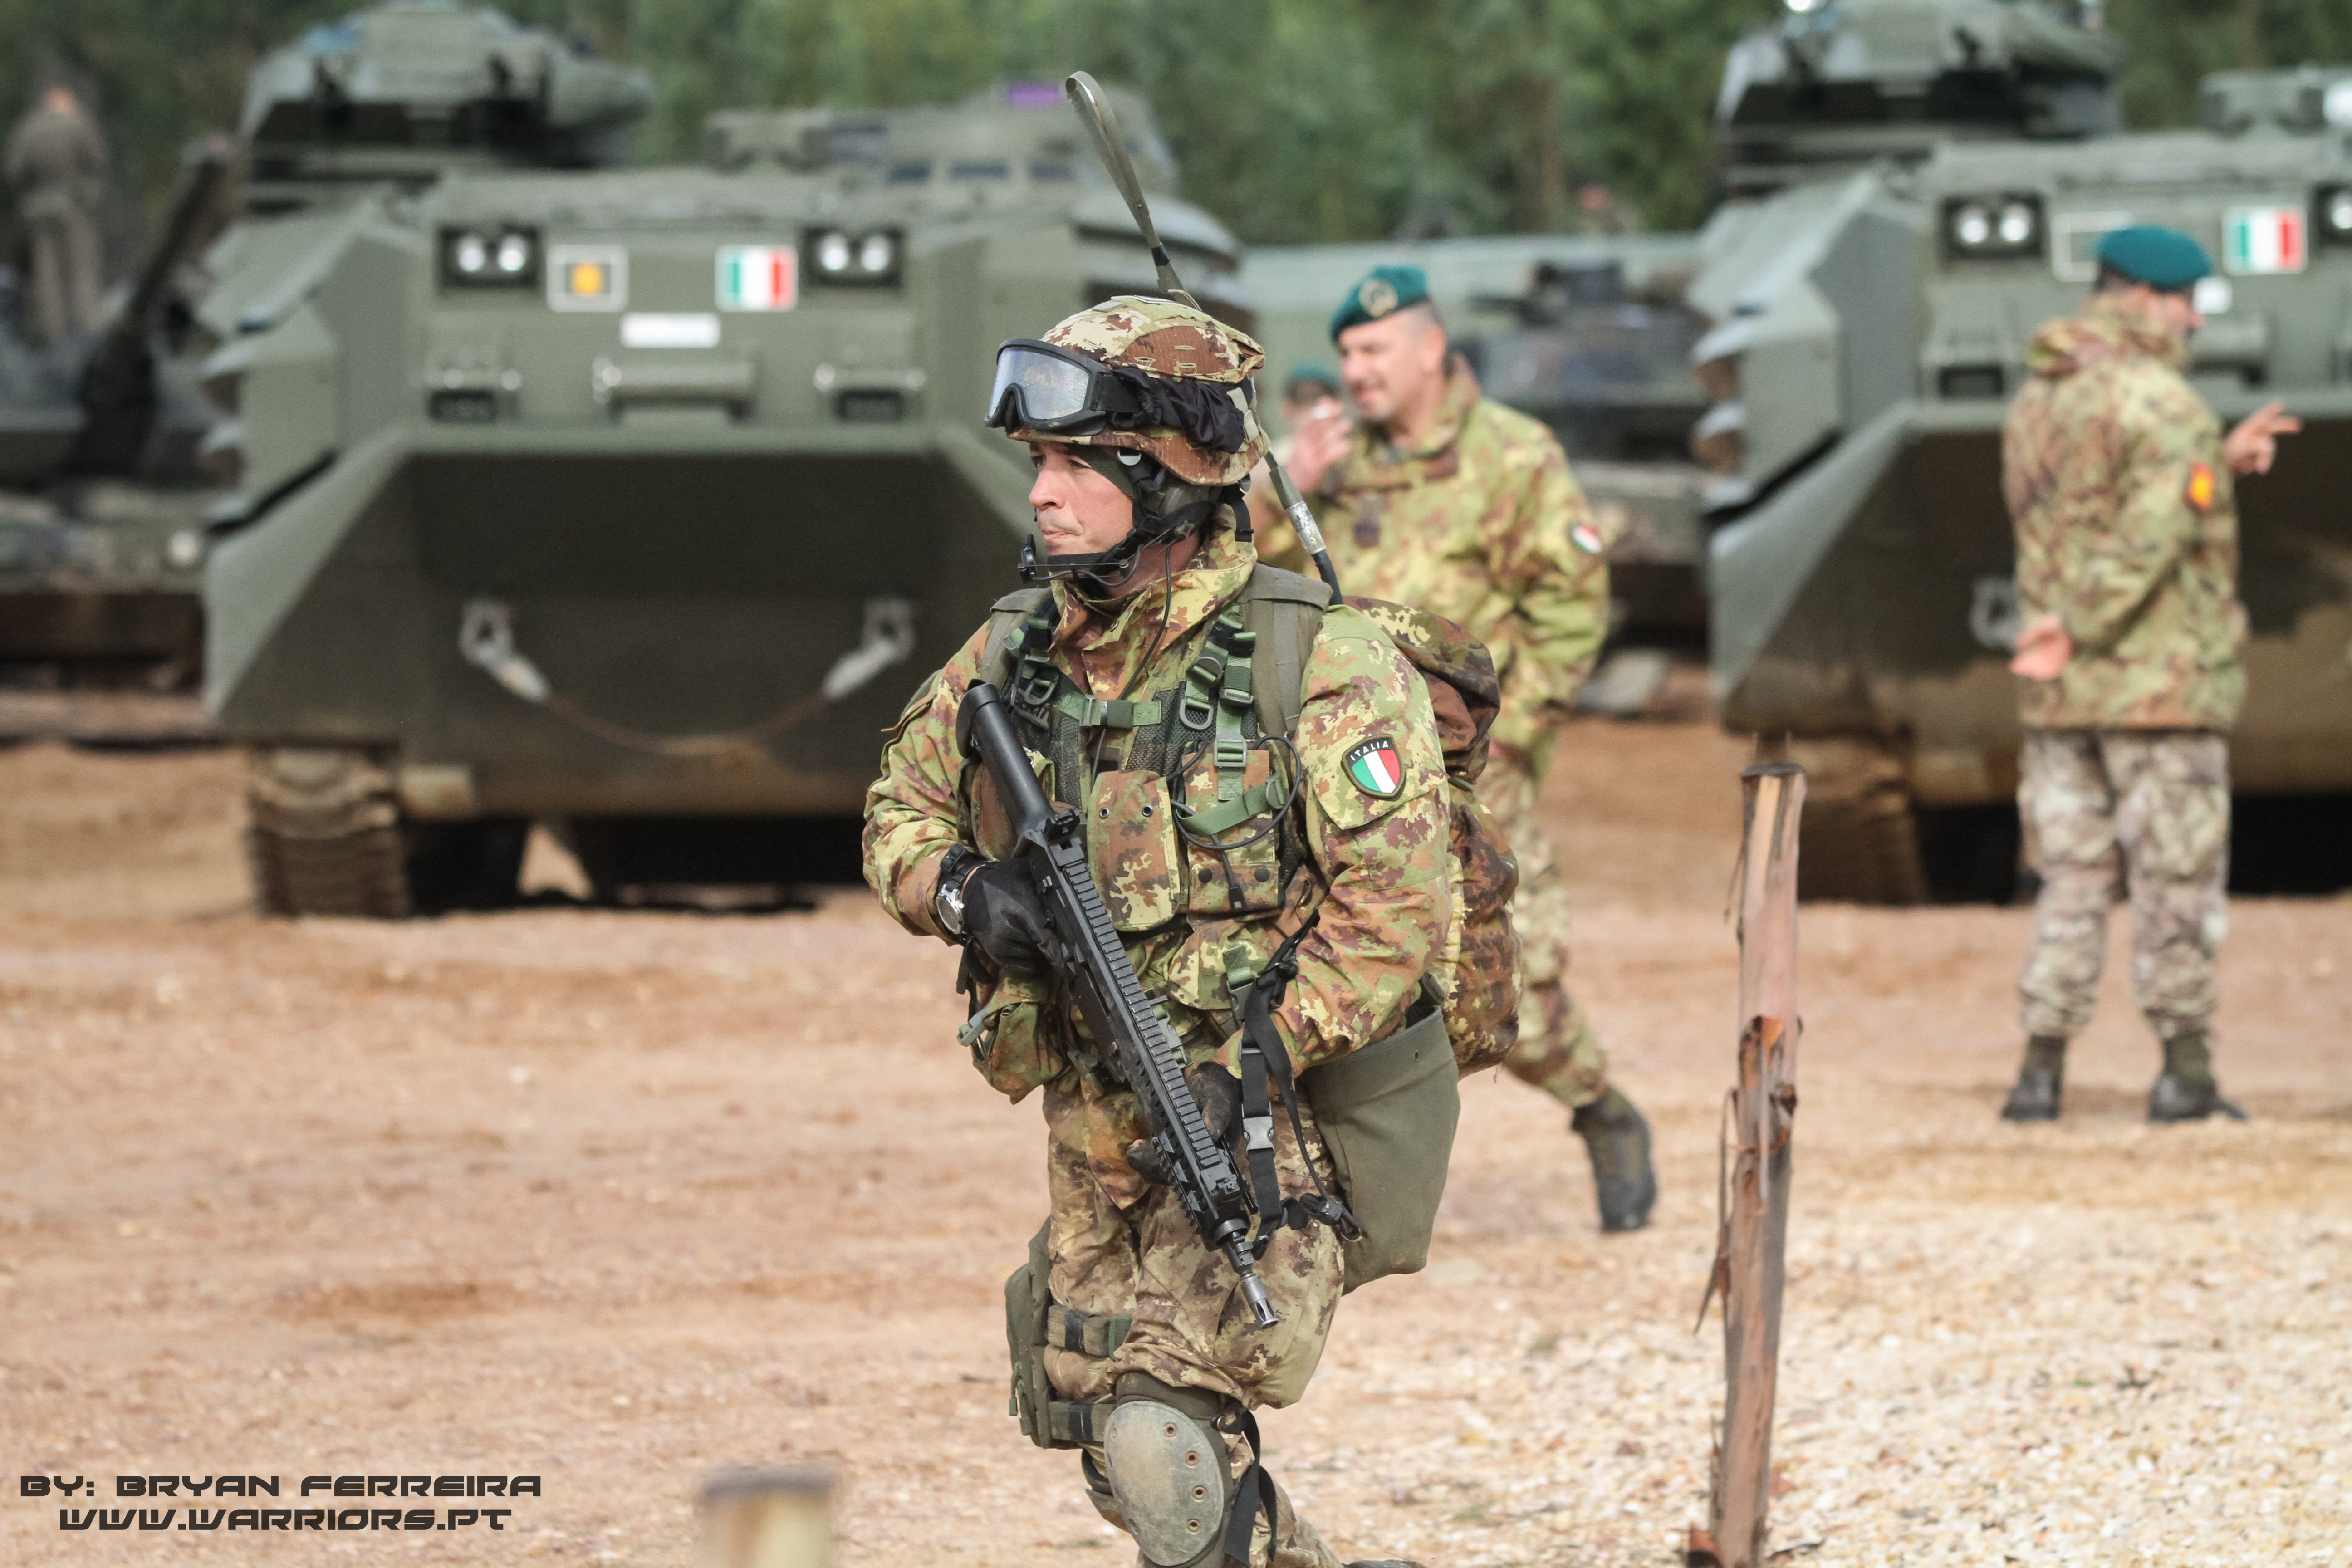 Soldado Italiano do Reggimento Lagunari Serenissima. Está armado com a espingarda de assalto Beretta ARX160